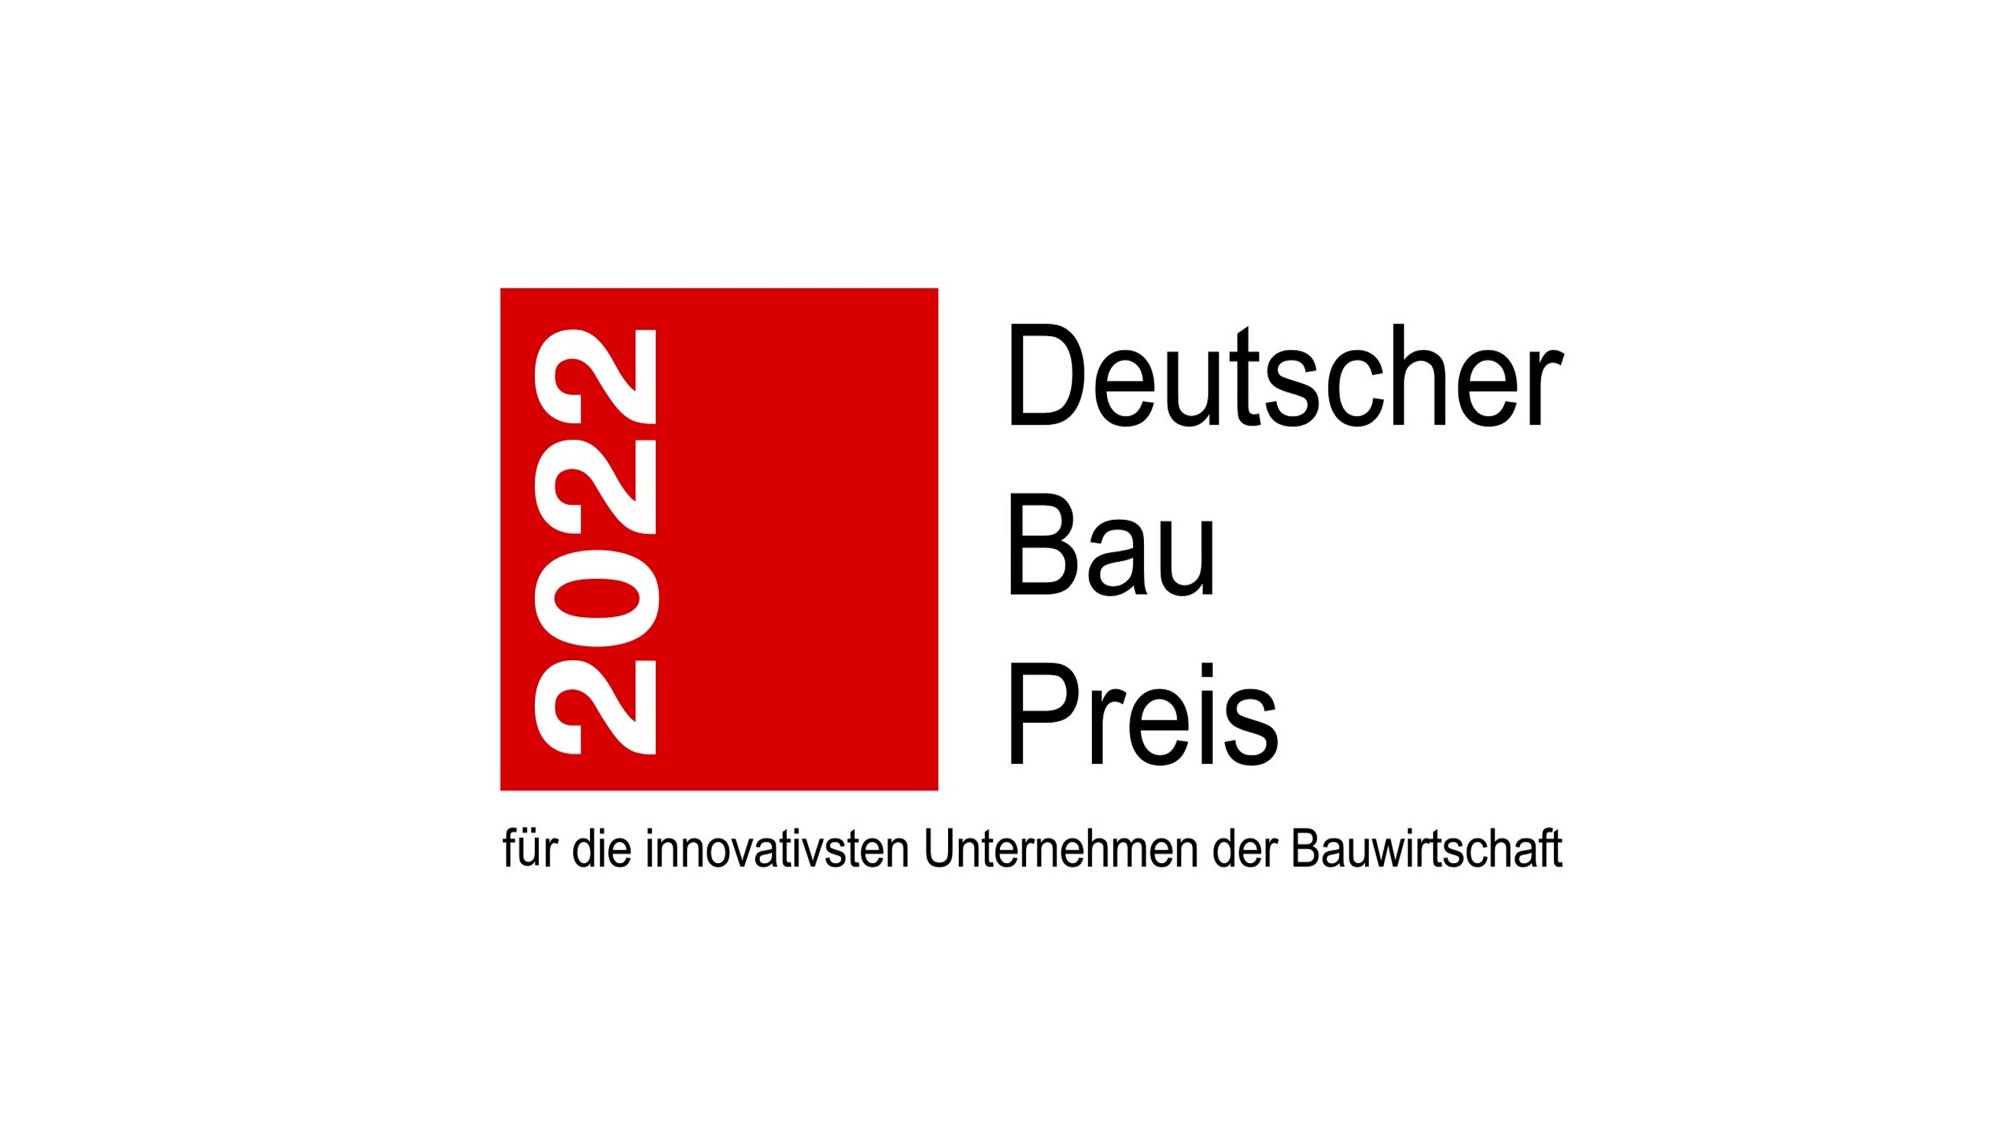 Deutscher Baupreis 2022 award ceremony